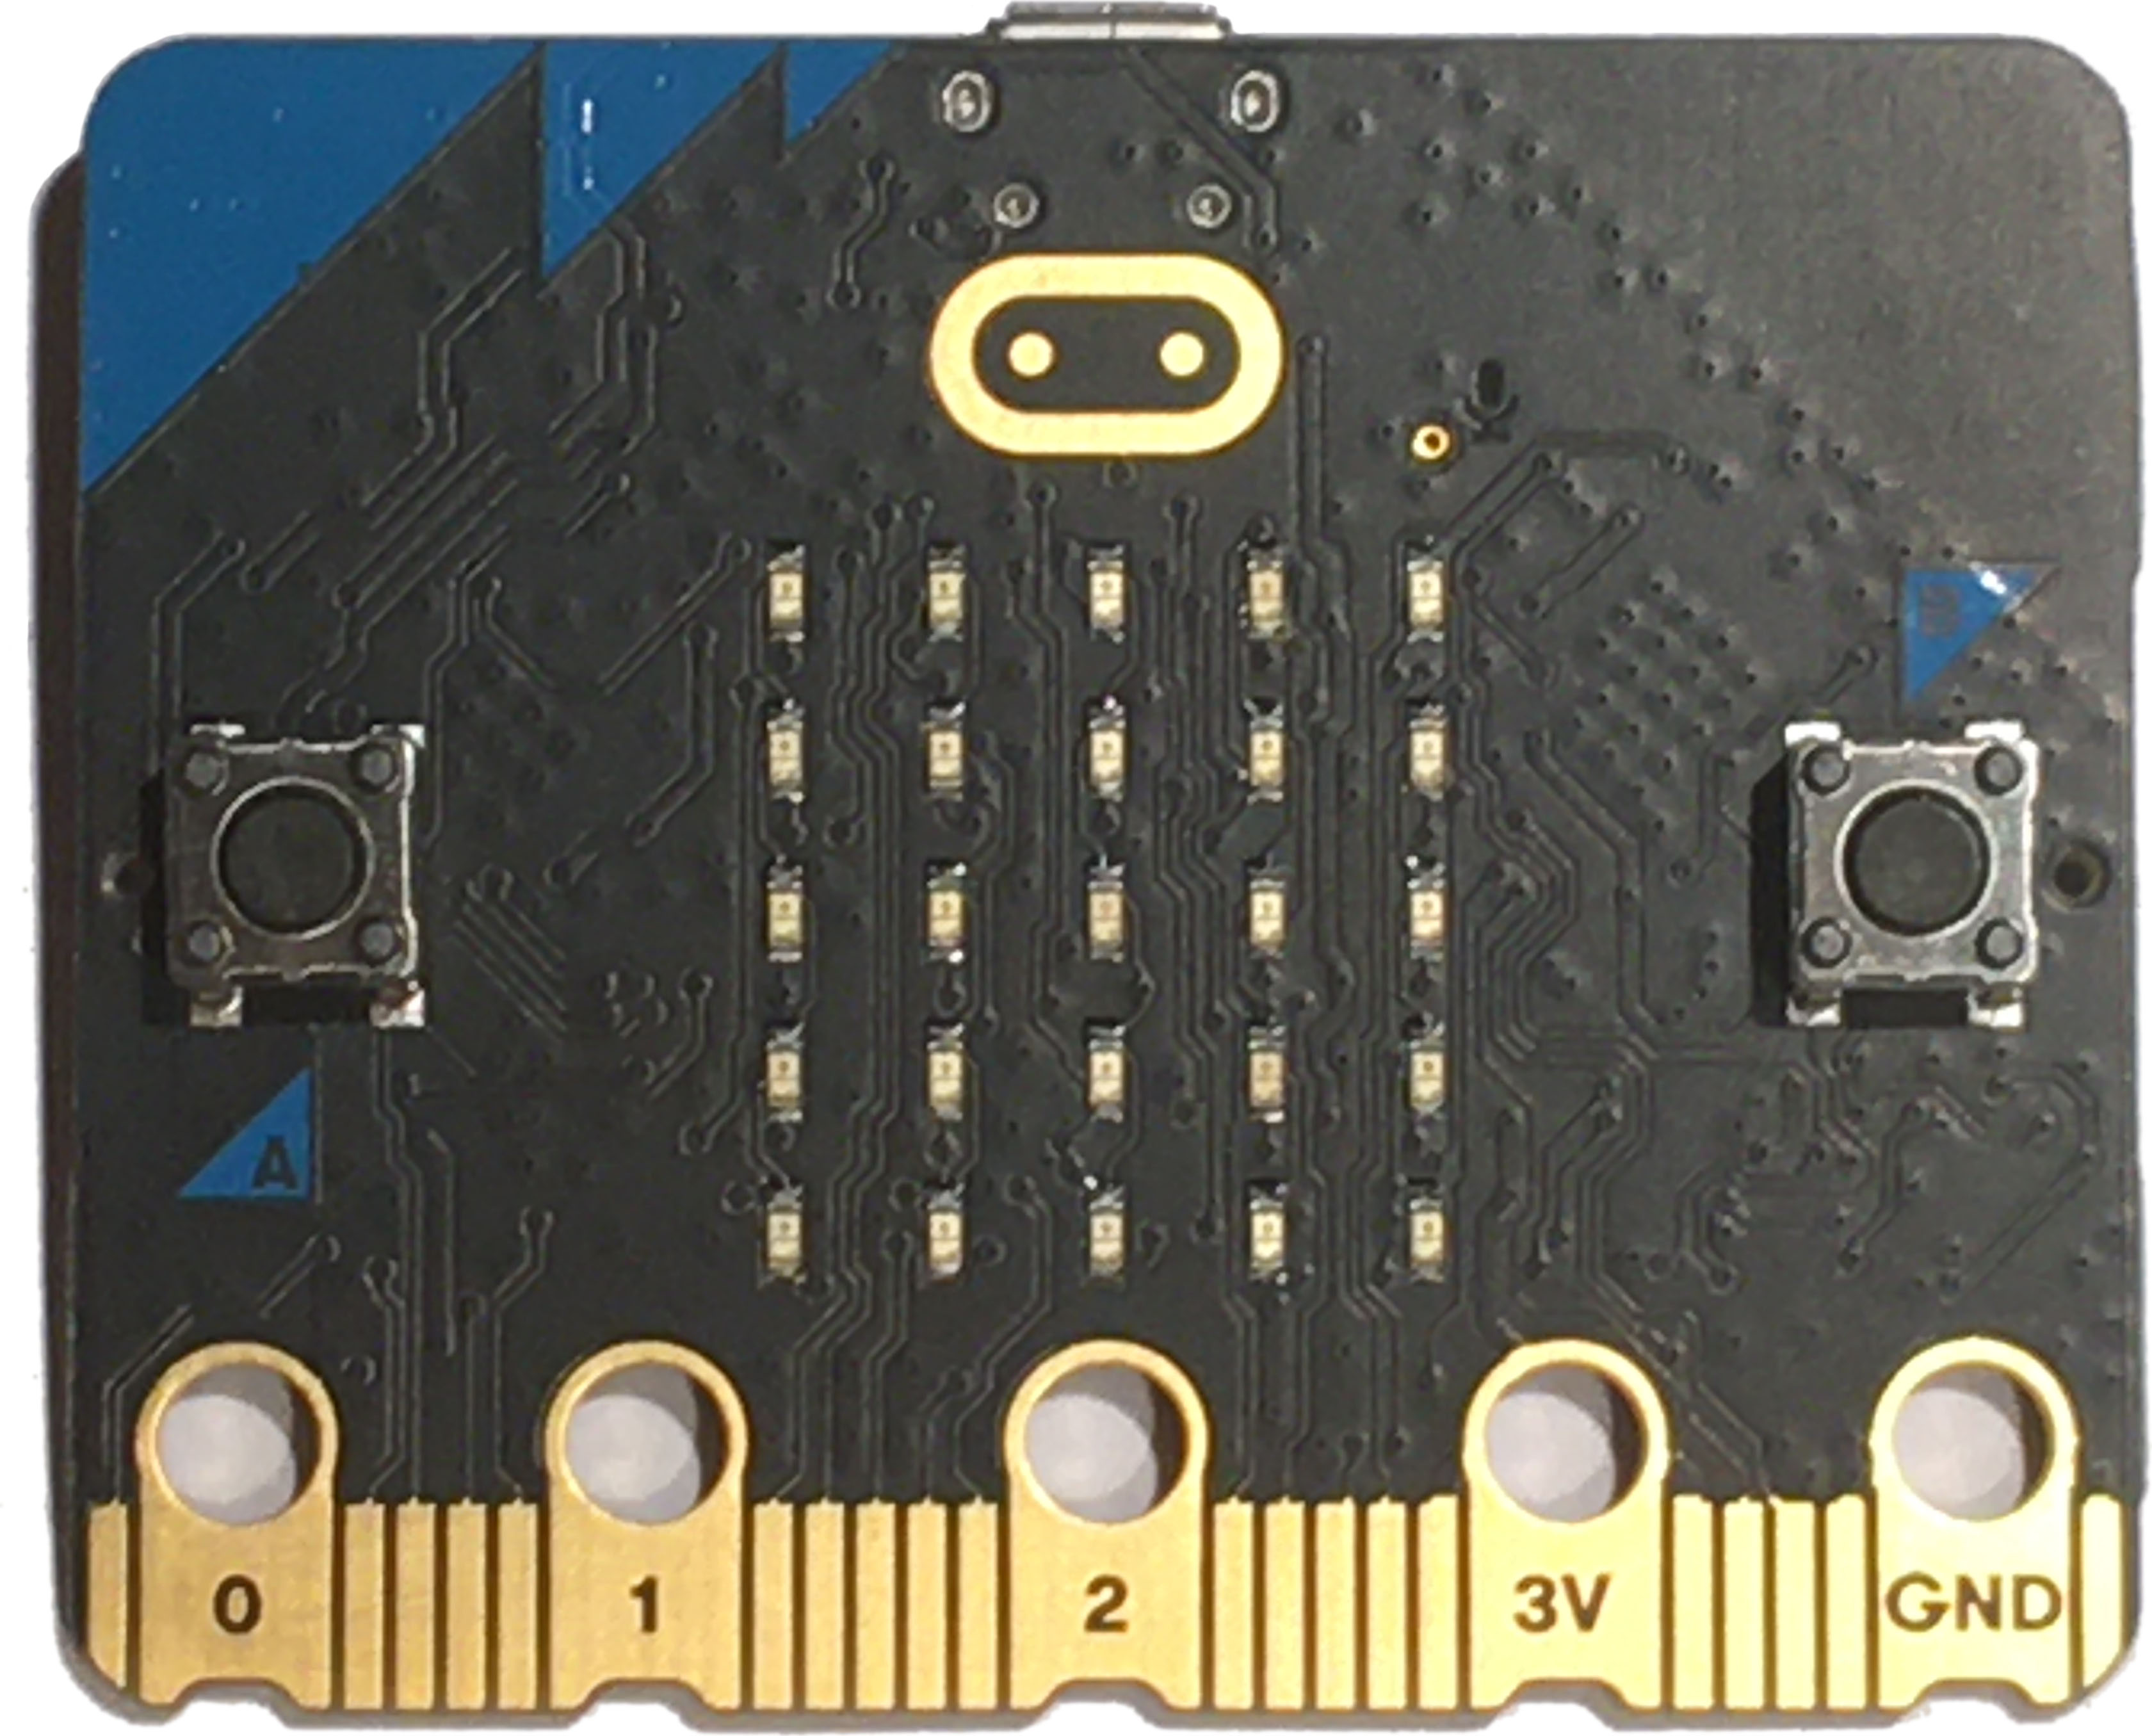 micro:bit hardware board